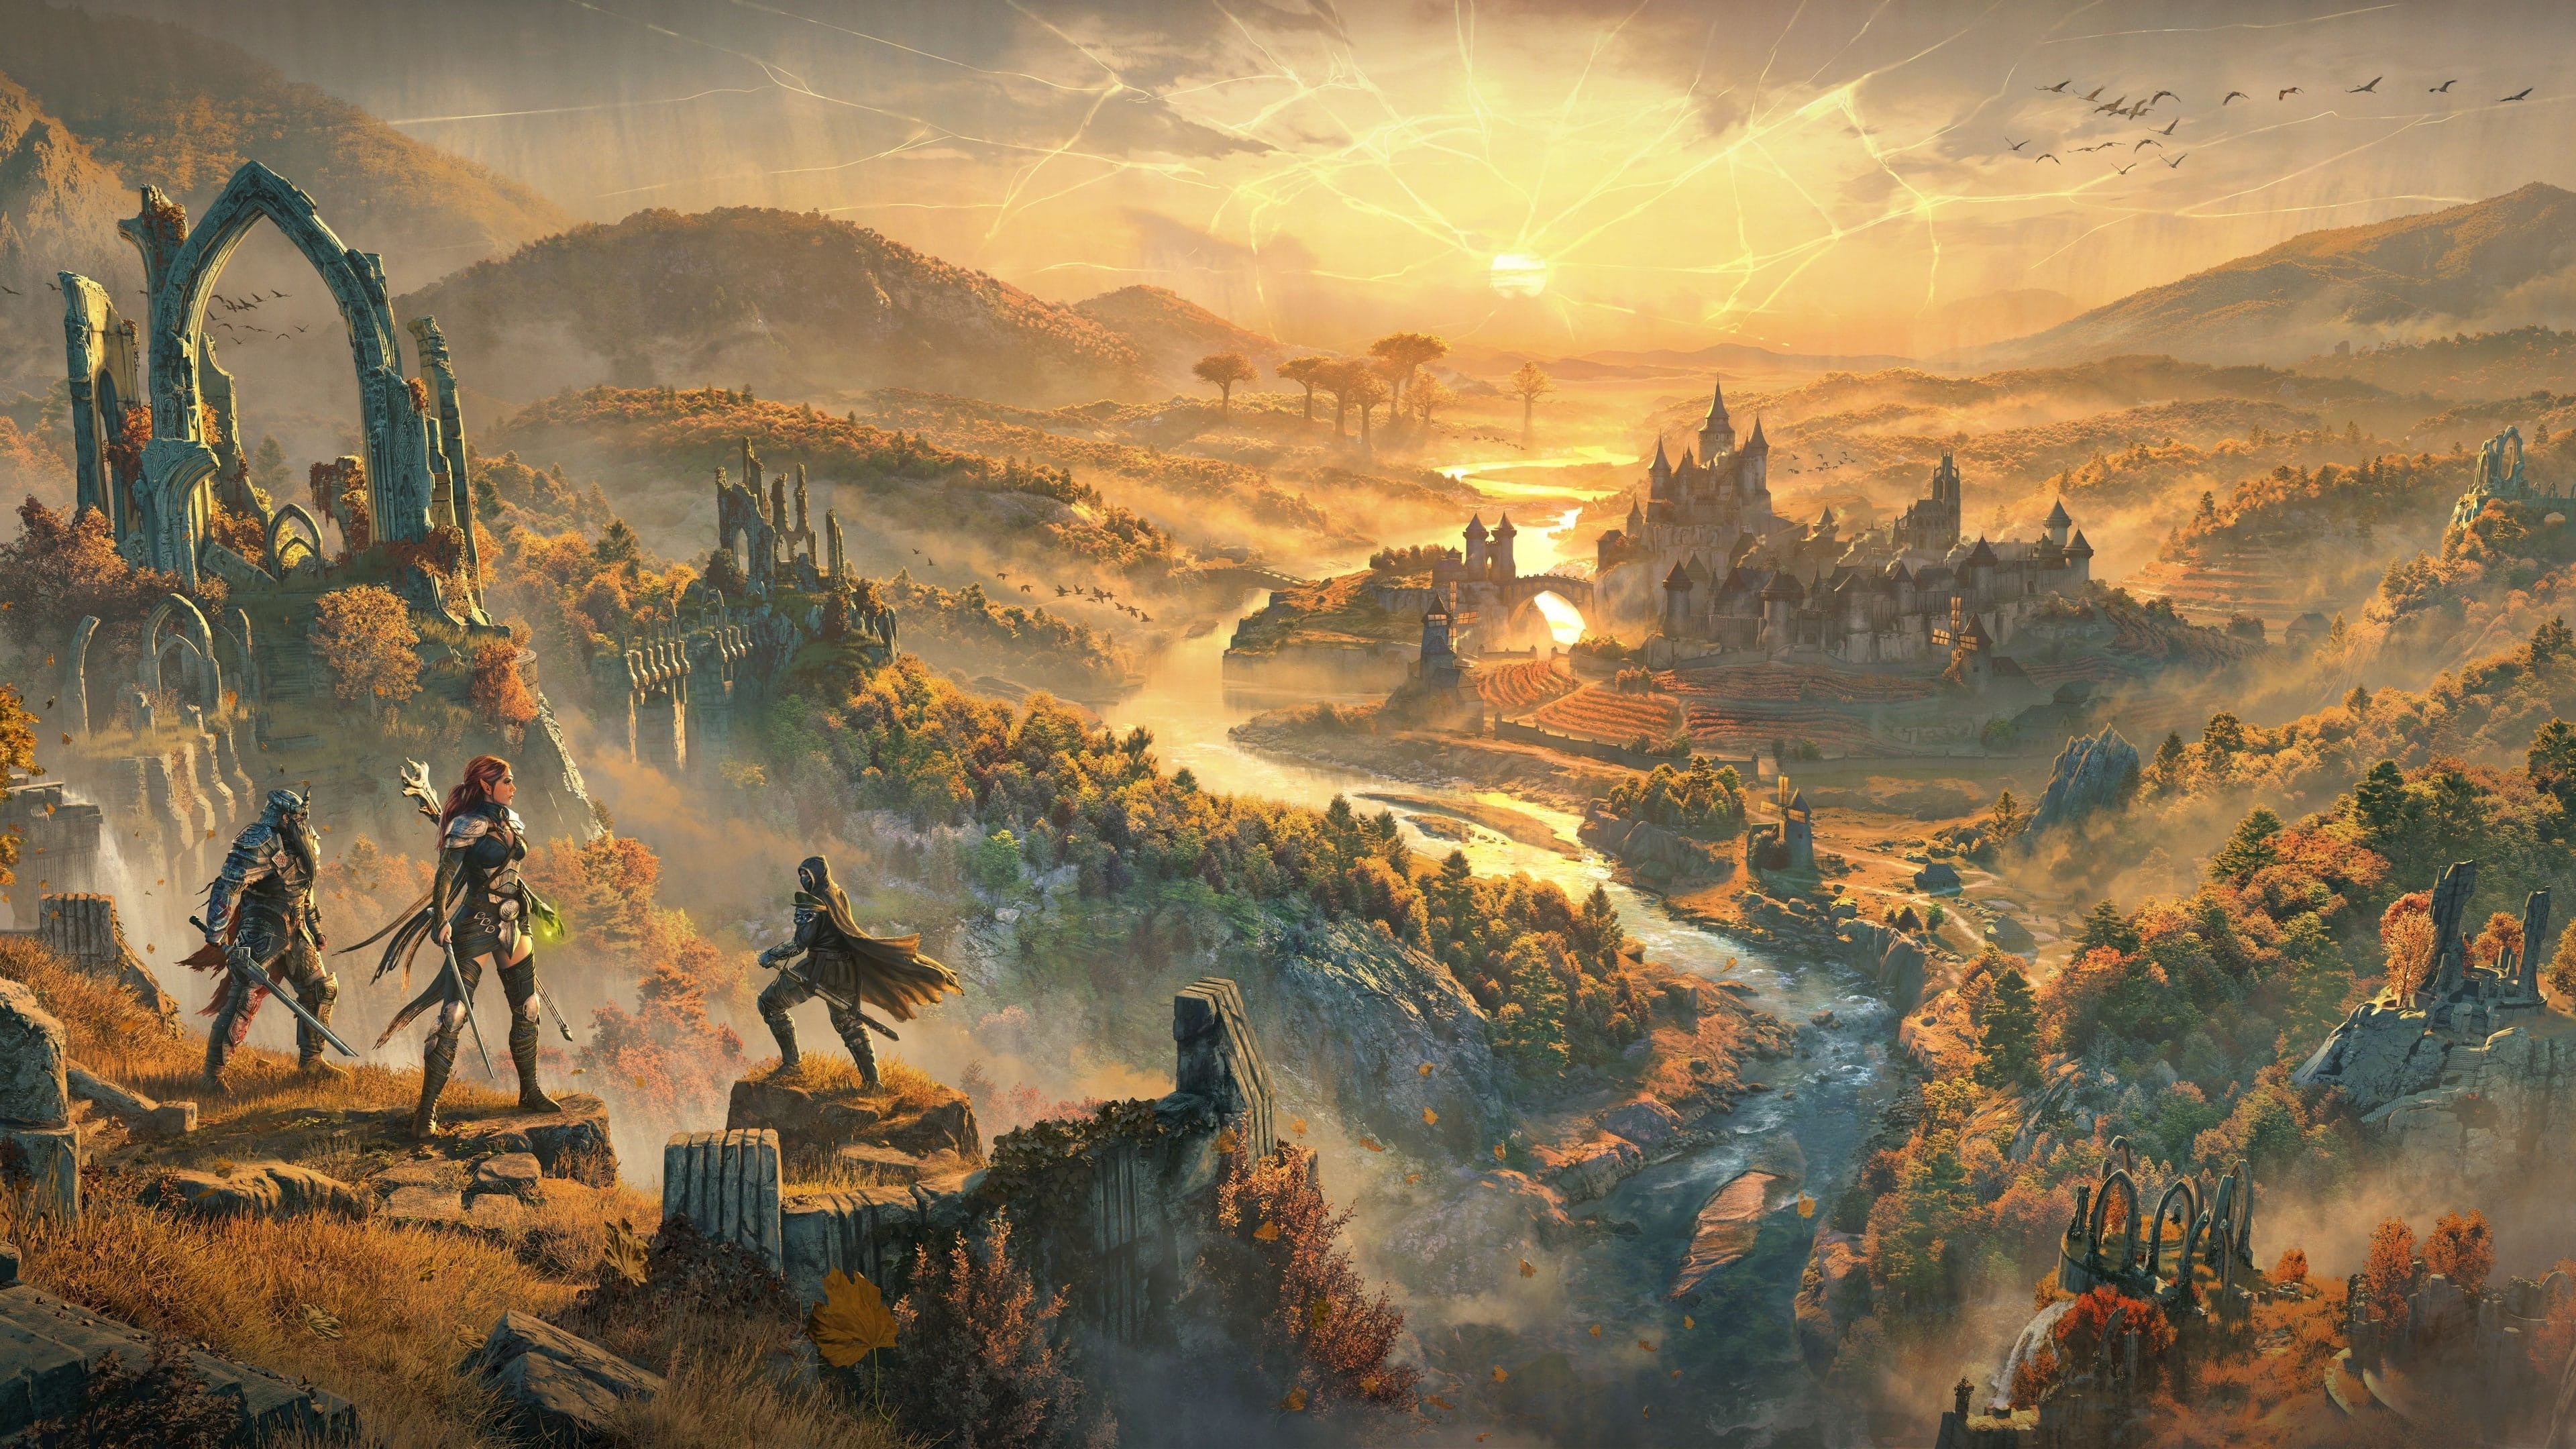 The Elder Scrolls Online: Deluxe Upgrade: Road Gold - למחשב